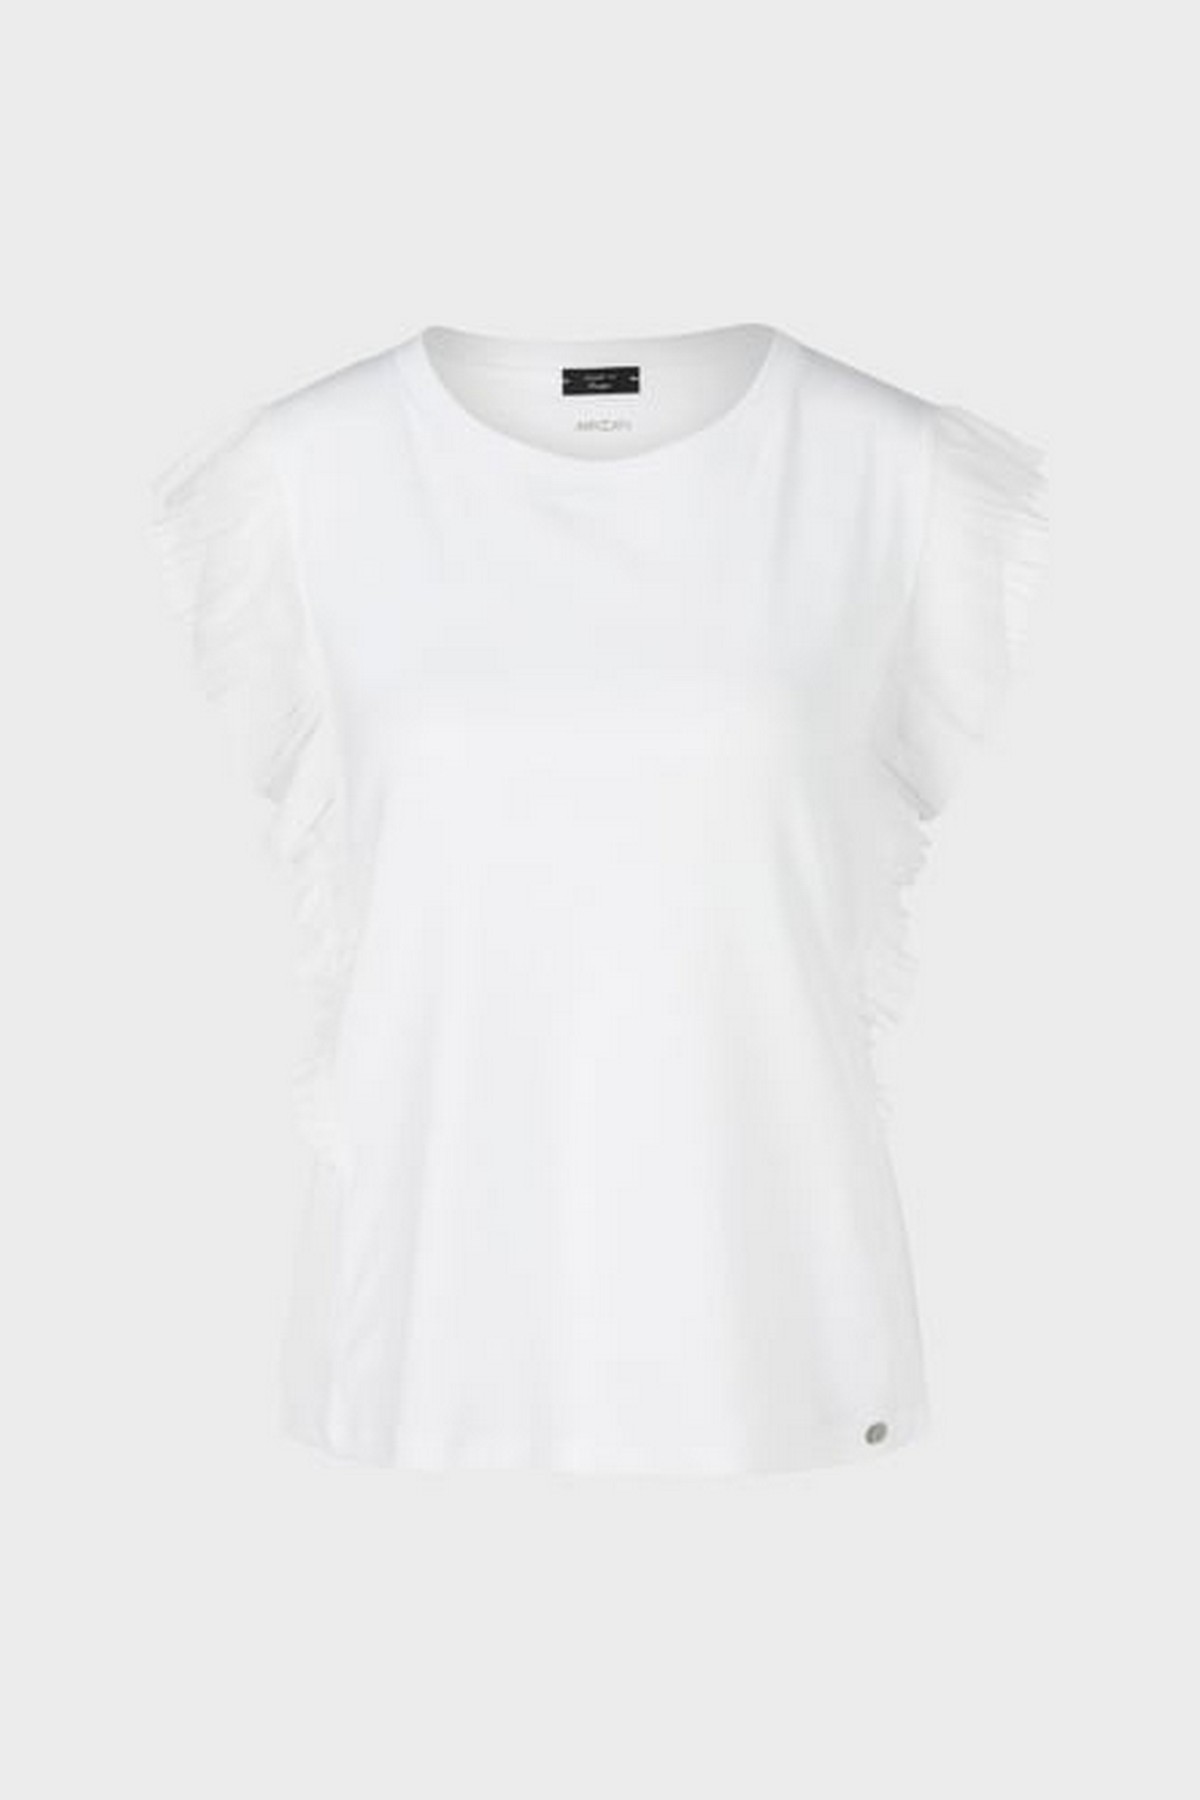 T-shirt  volants in de kleur wit van het merk Marc Cain Collections